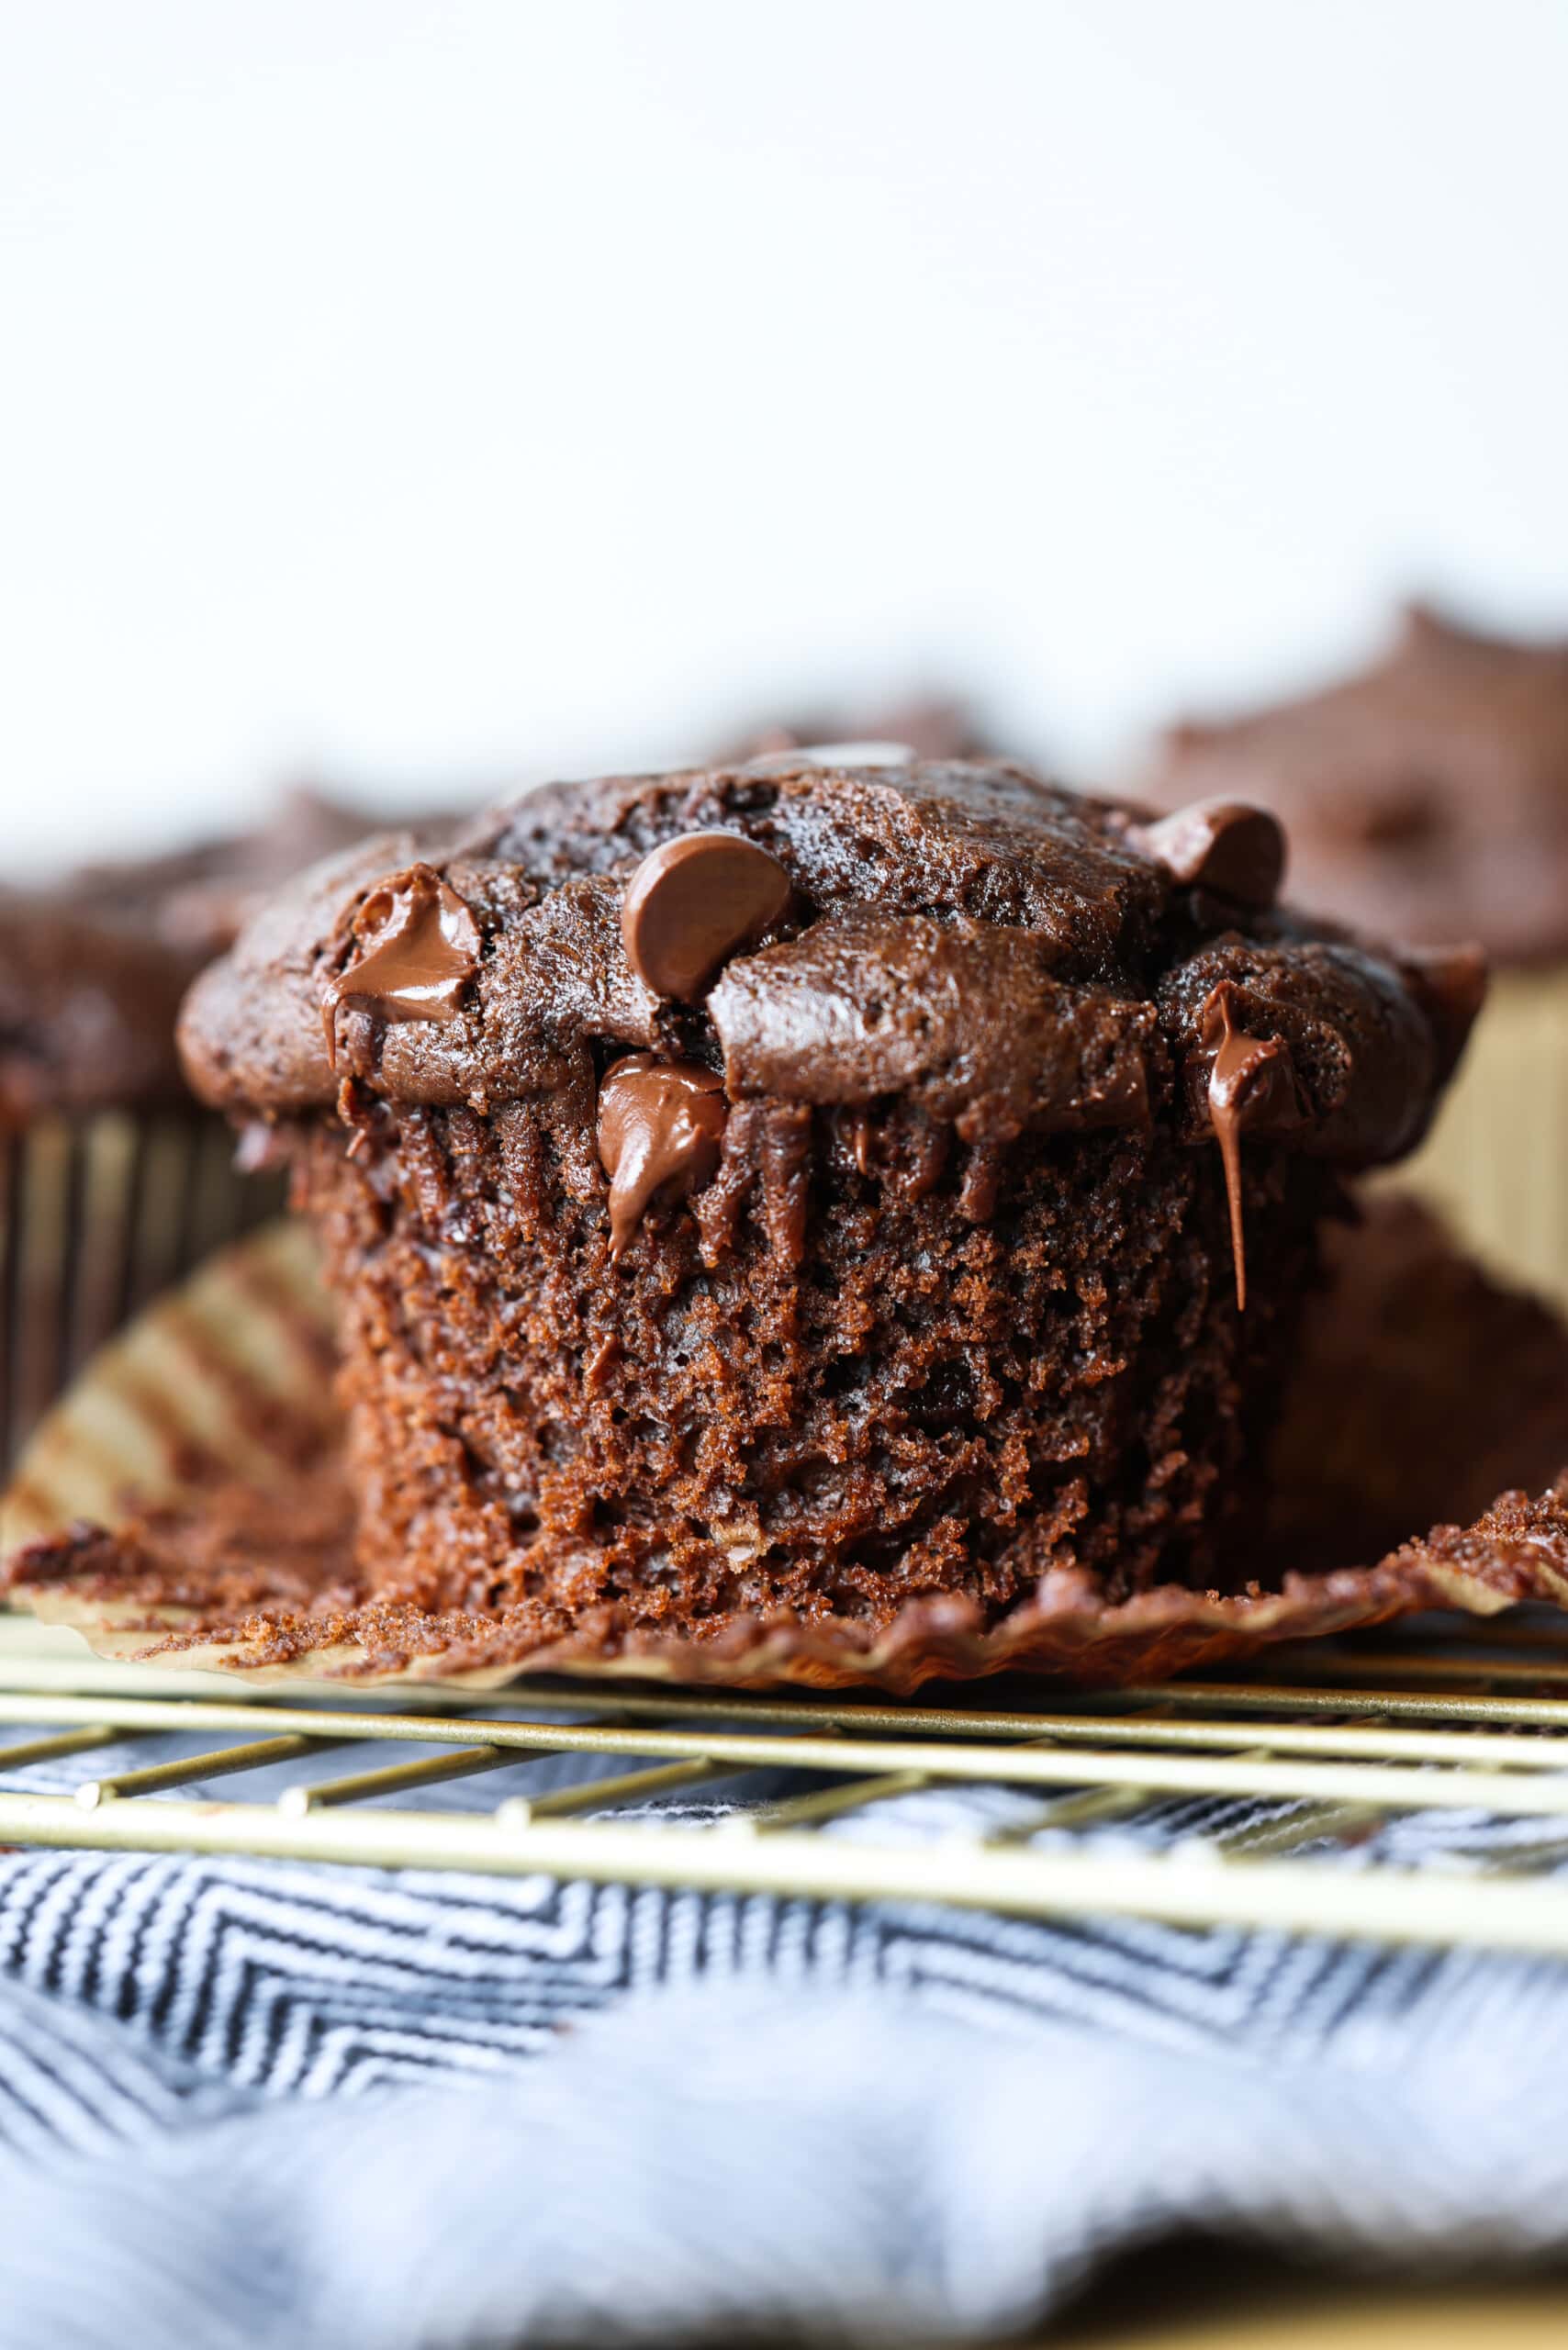 Muffin de chocolate abierto con chispas de chocolate derretido